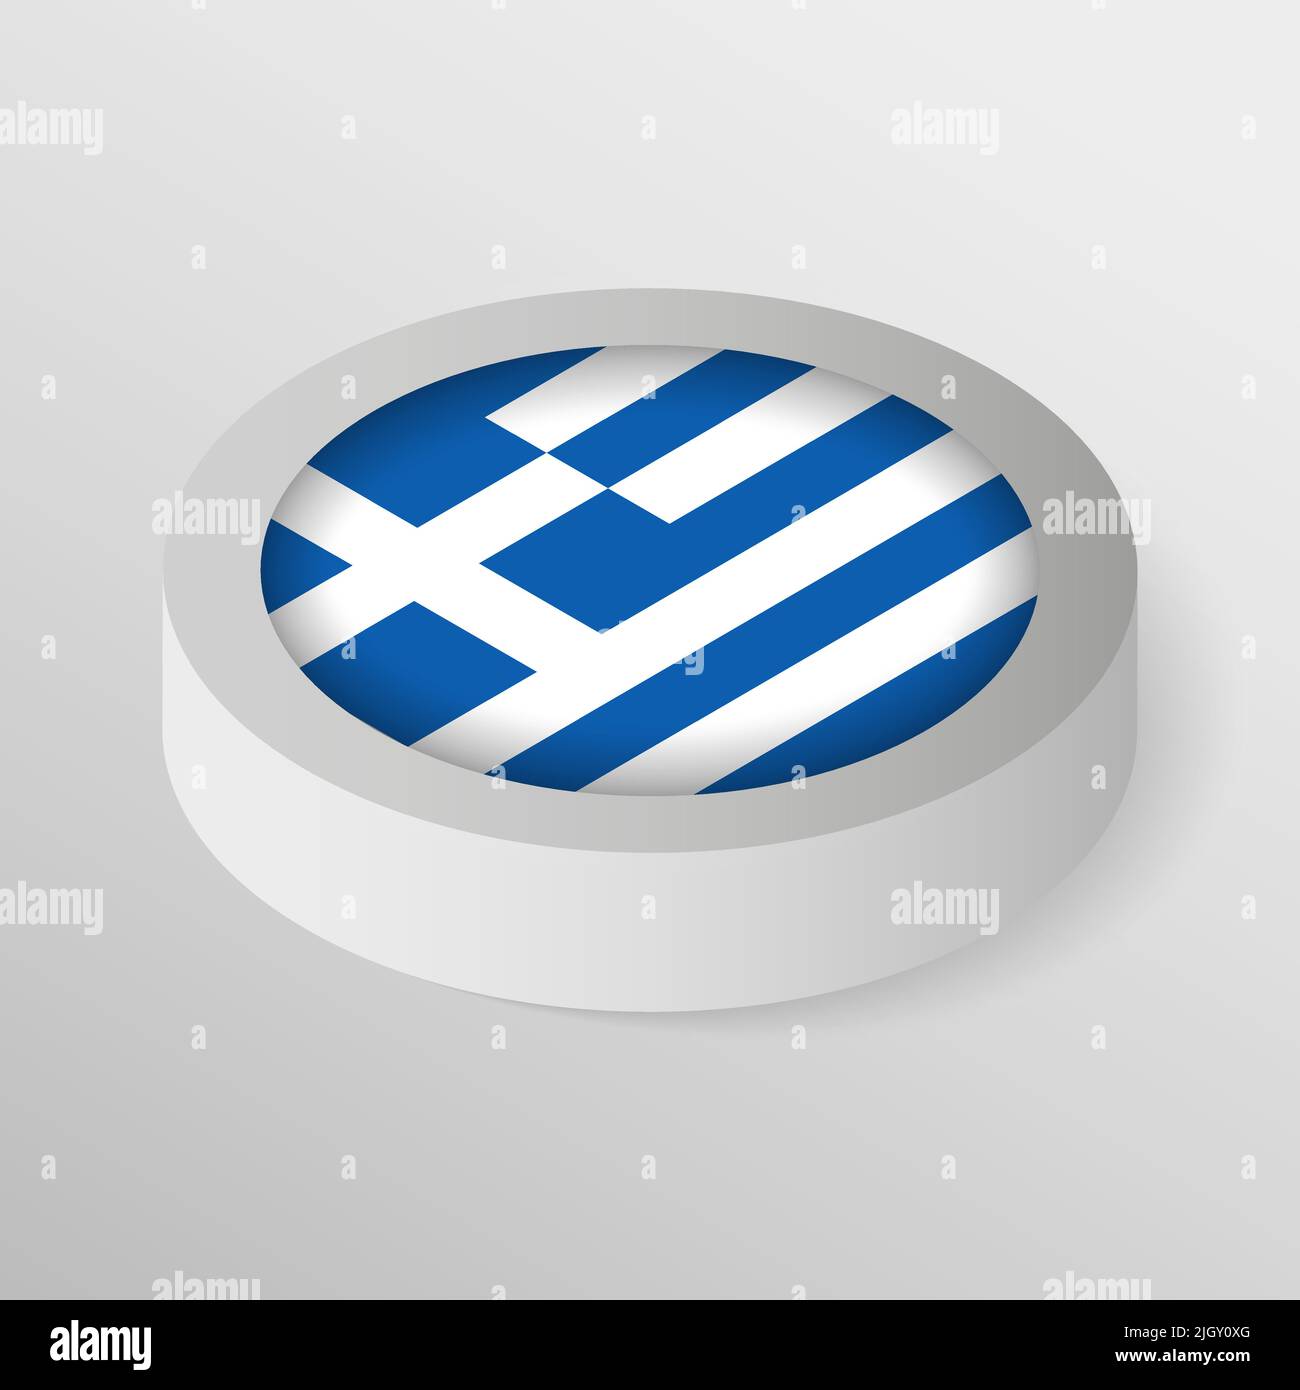 EPS10 Vektor Patriotisches Schild mit Flagge von Griechenland. Ein Element der Wirkung für die Verwendung, die Sie daraus machen möchten. Stock Vektor